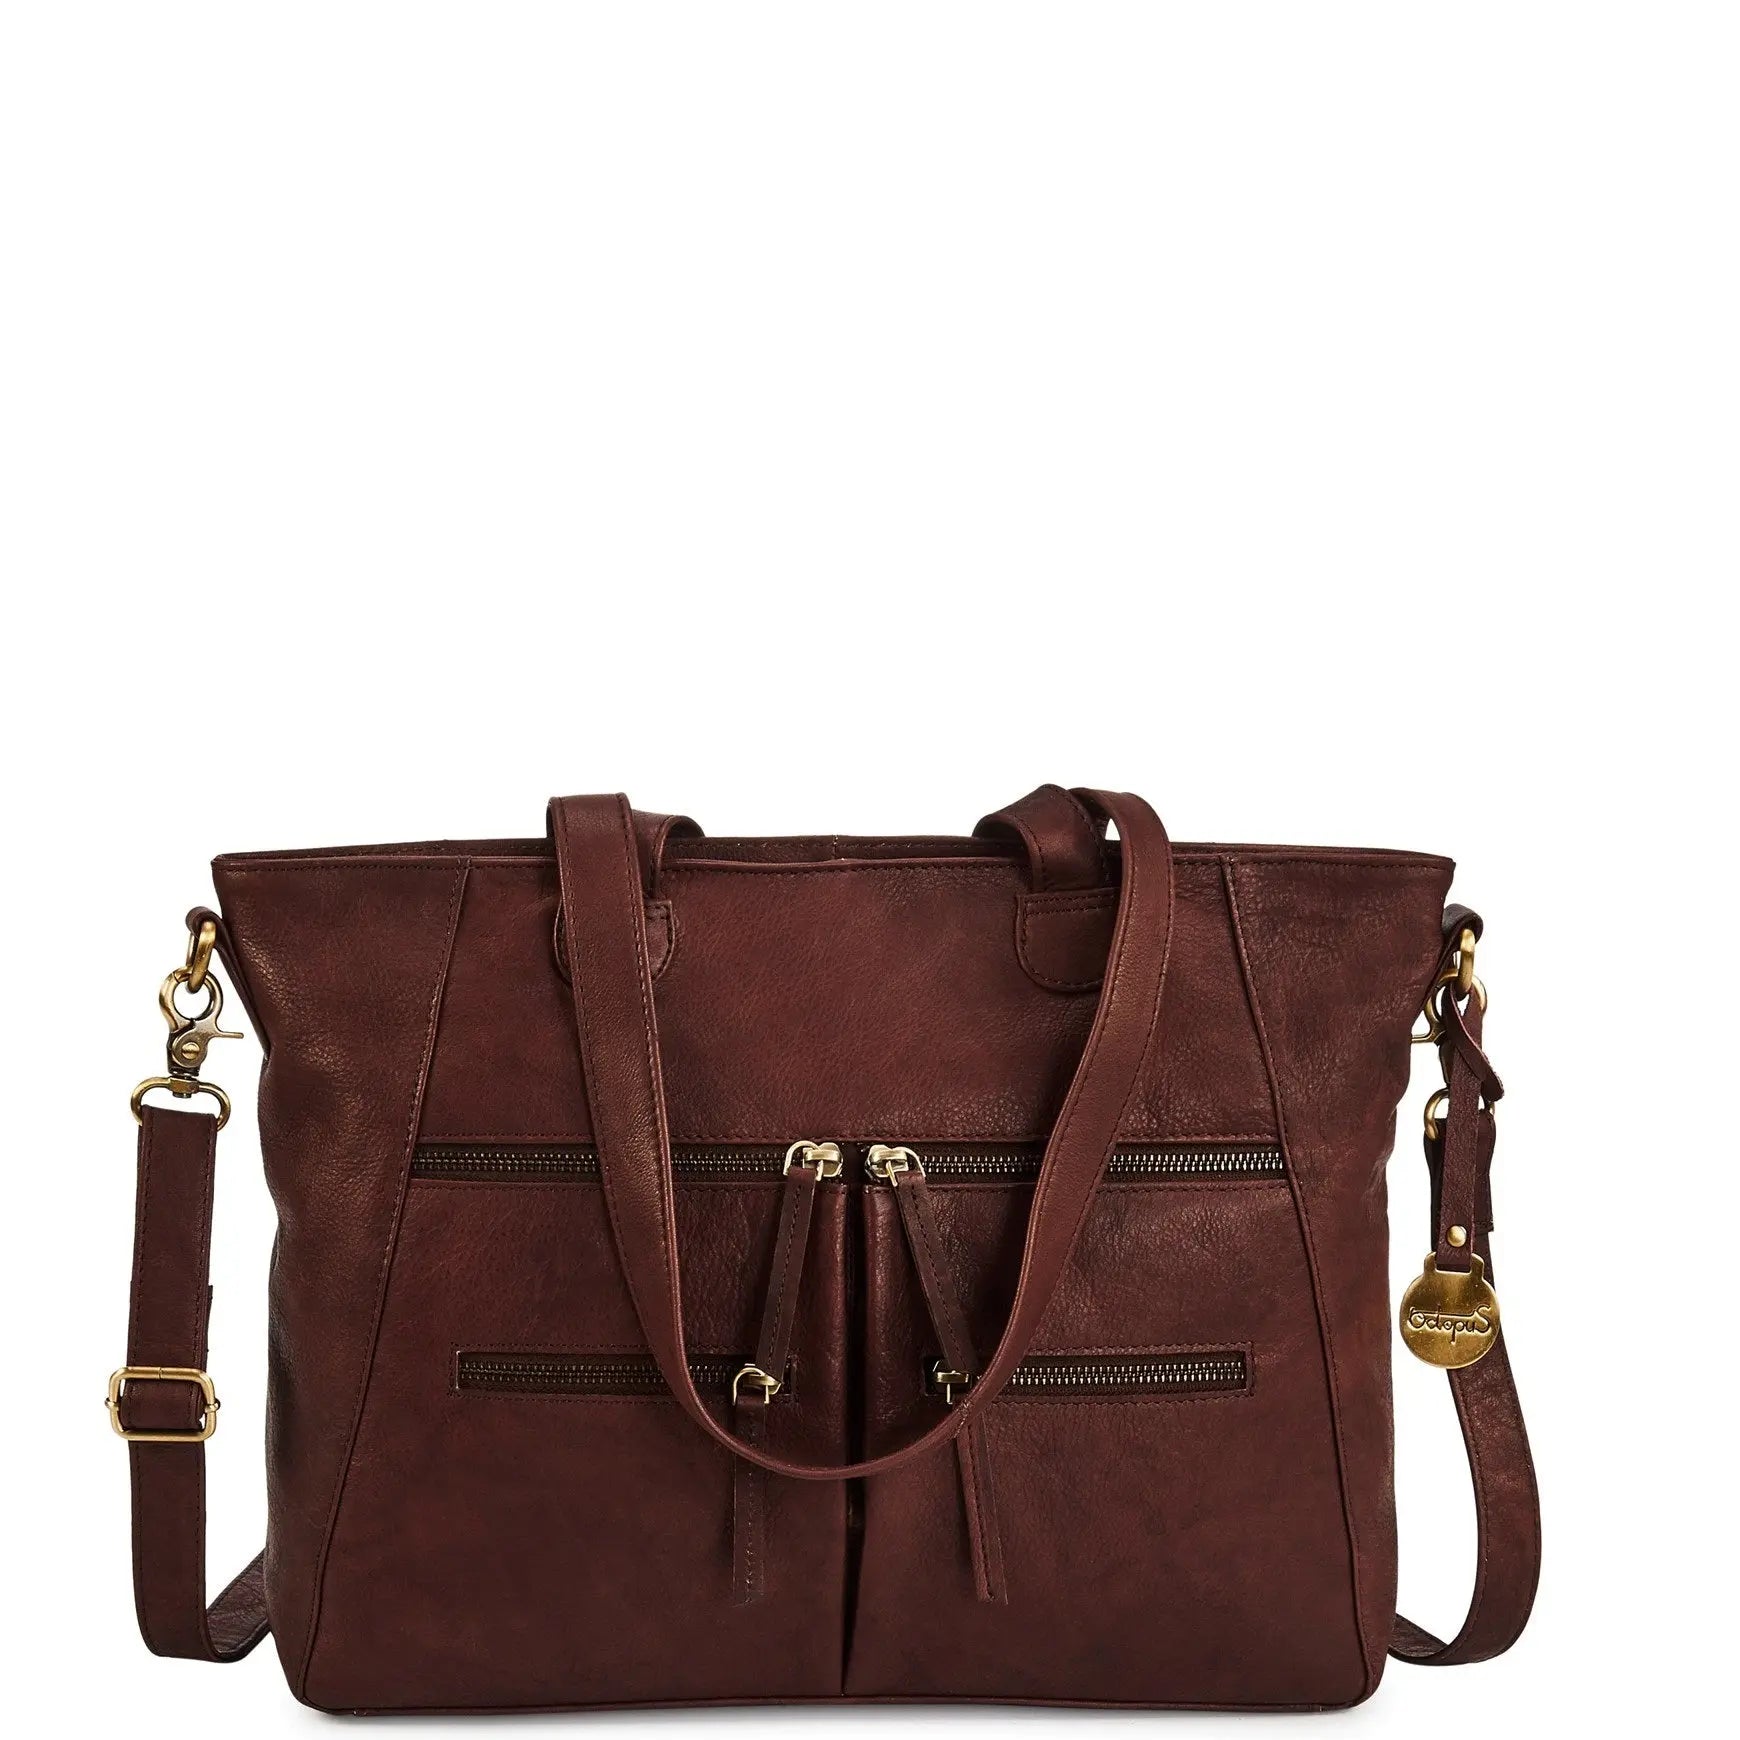 Billede af Style Nimbus i mørkebrun. Fantastisk smuk lædertaske, til hånd, skulder & crossbody, i mellemstørrelse